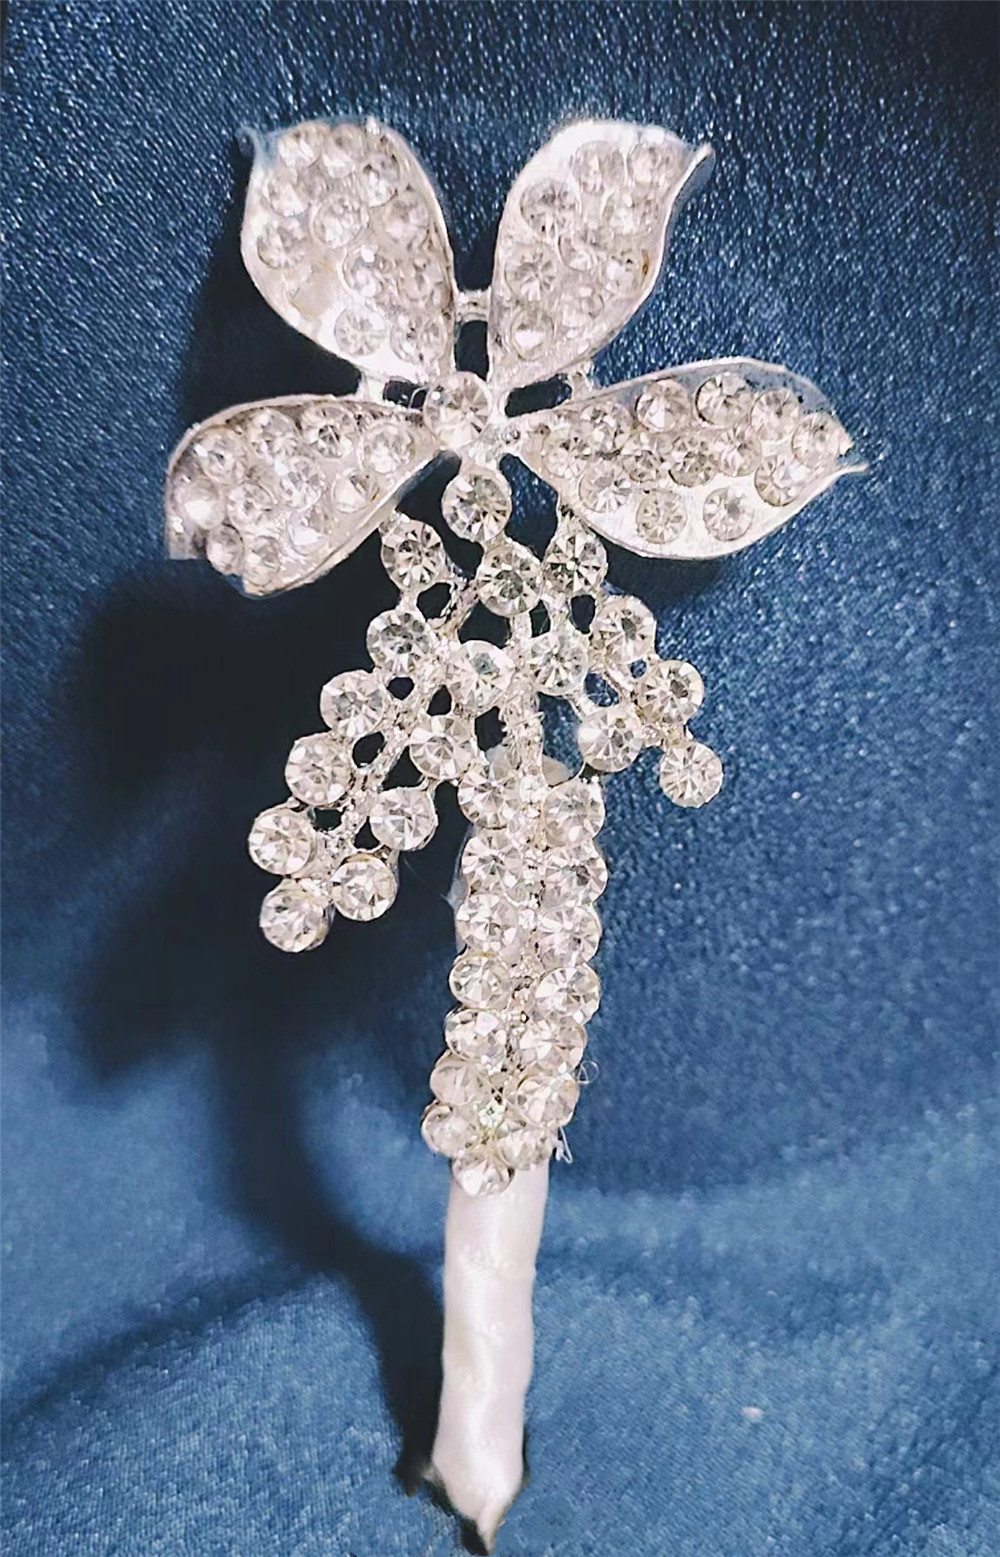 shining crystal rhinestone wedding brooch boutonniere bridegroom wedding favors